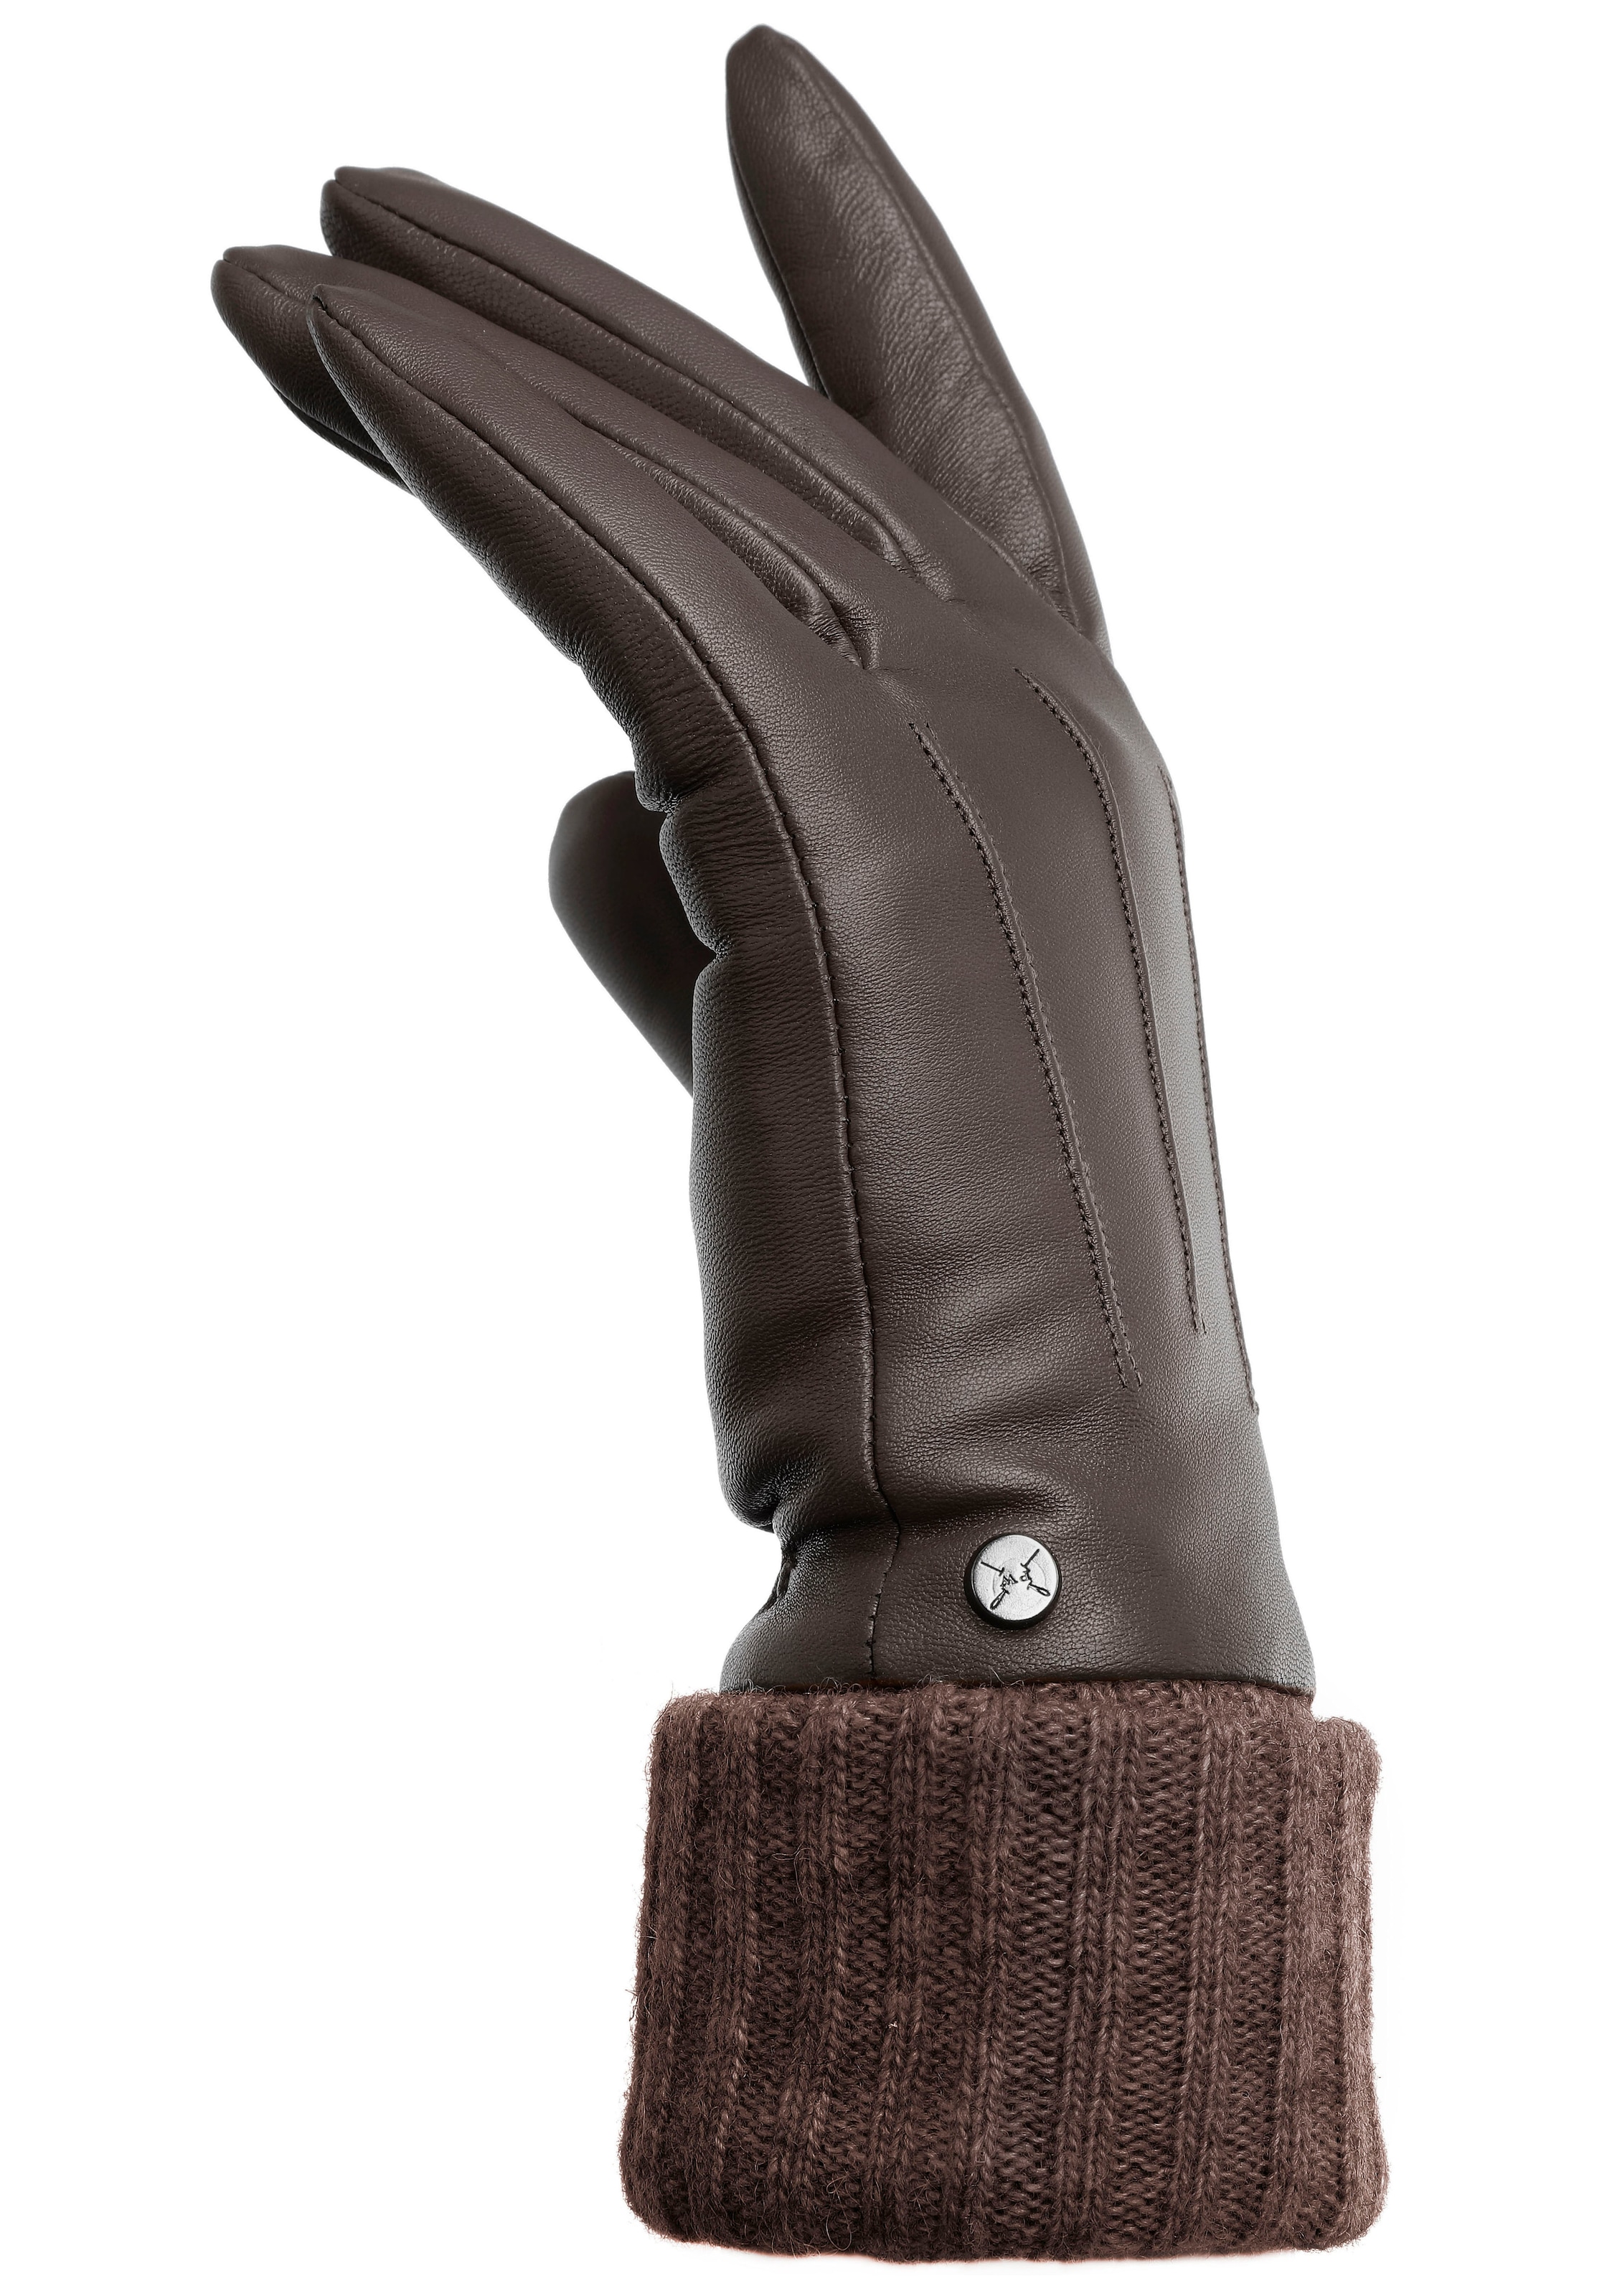 PEARLWOOD Lederhandschuhe »Lipa«, Touchscreen proofed - mit 10 Fingern bedienbar